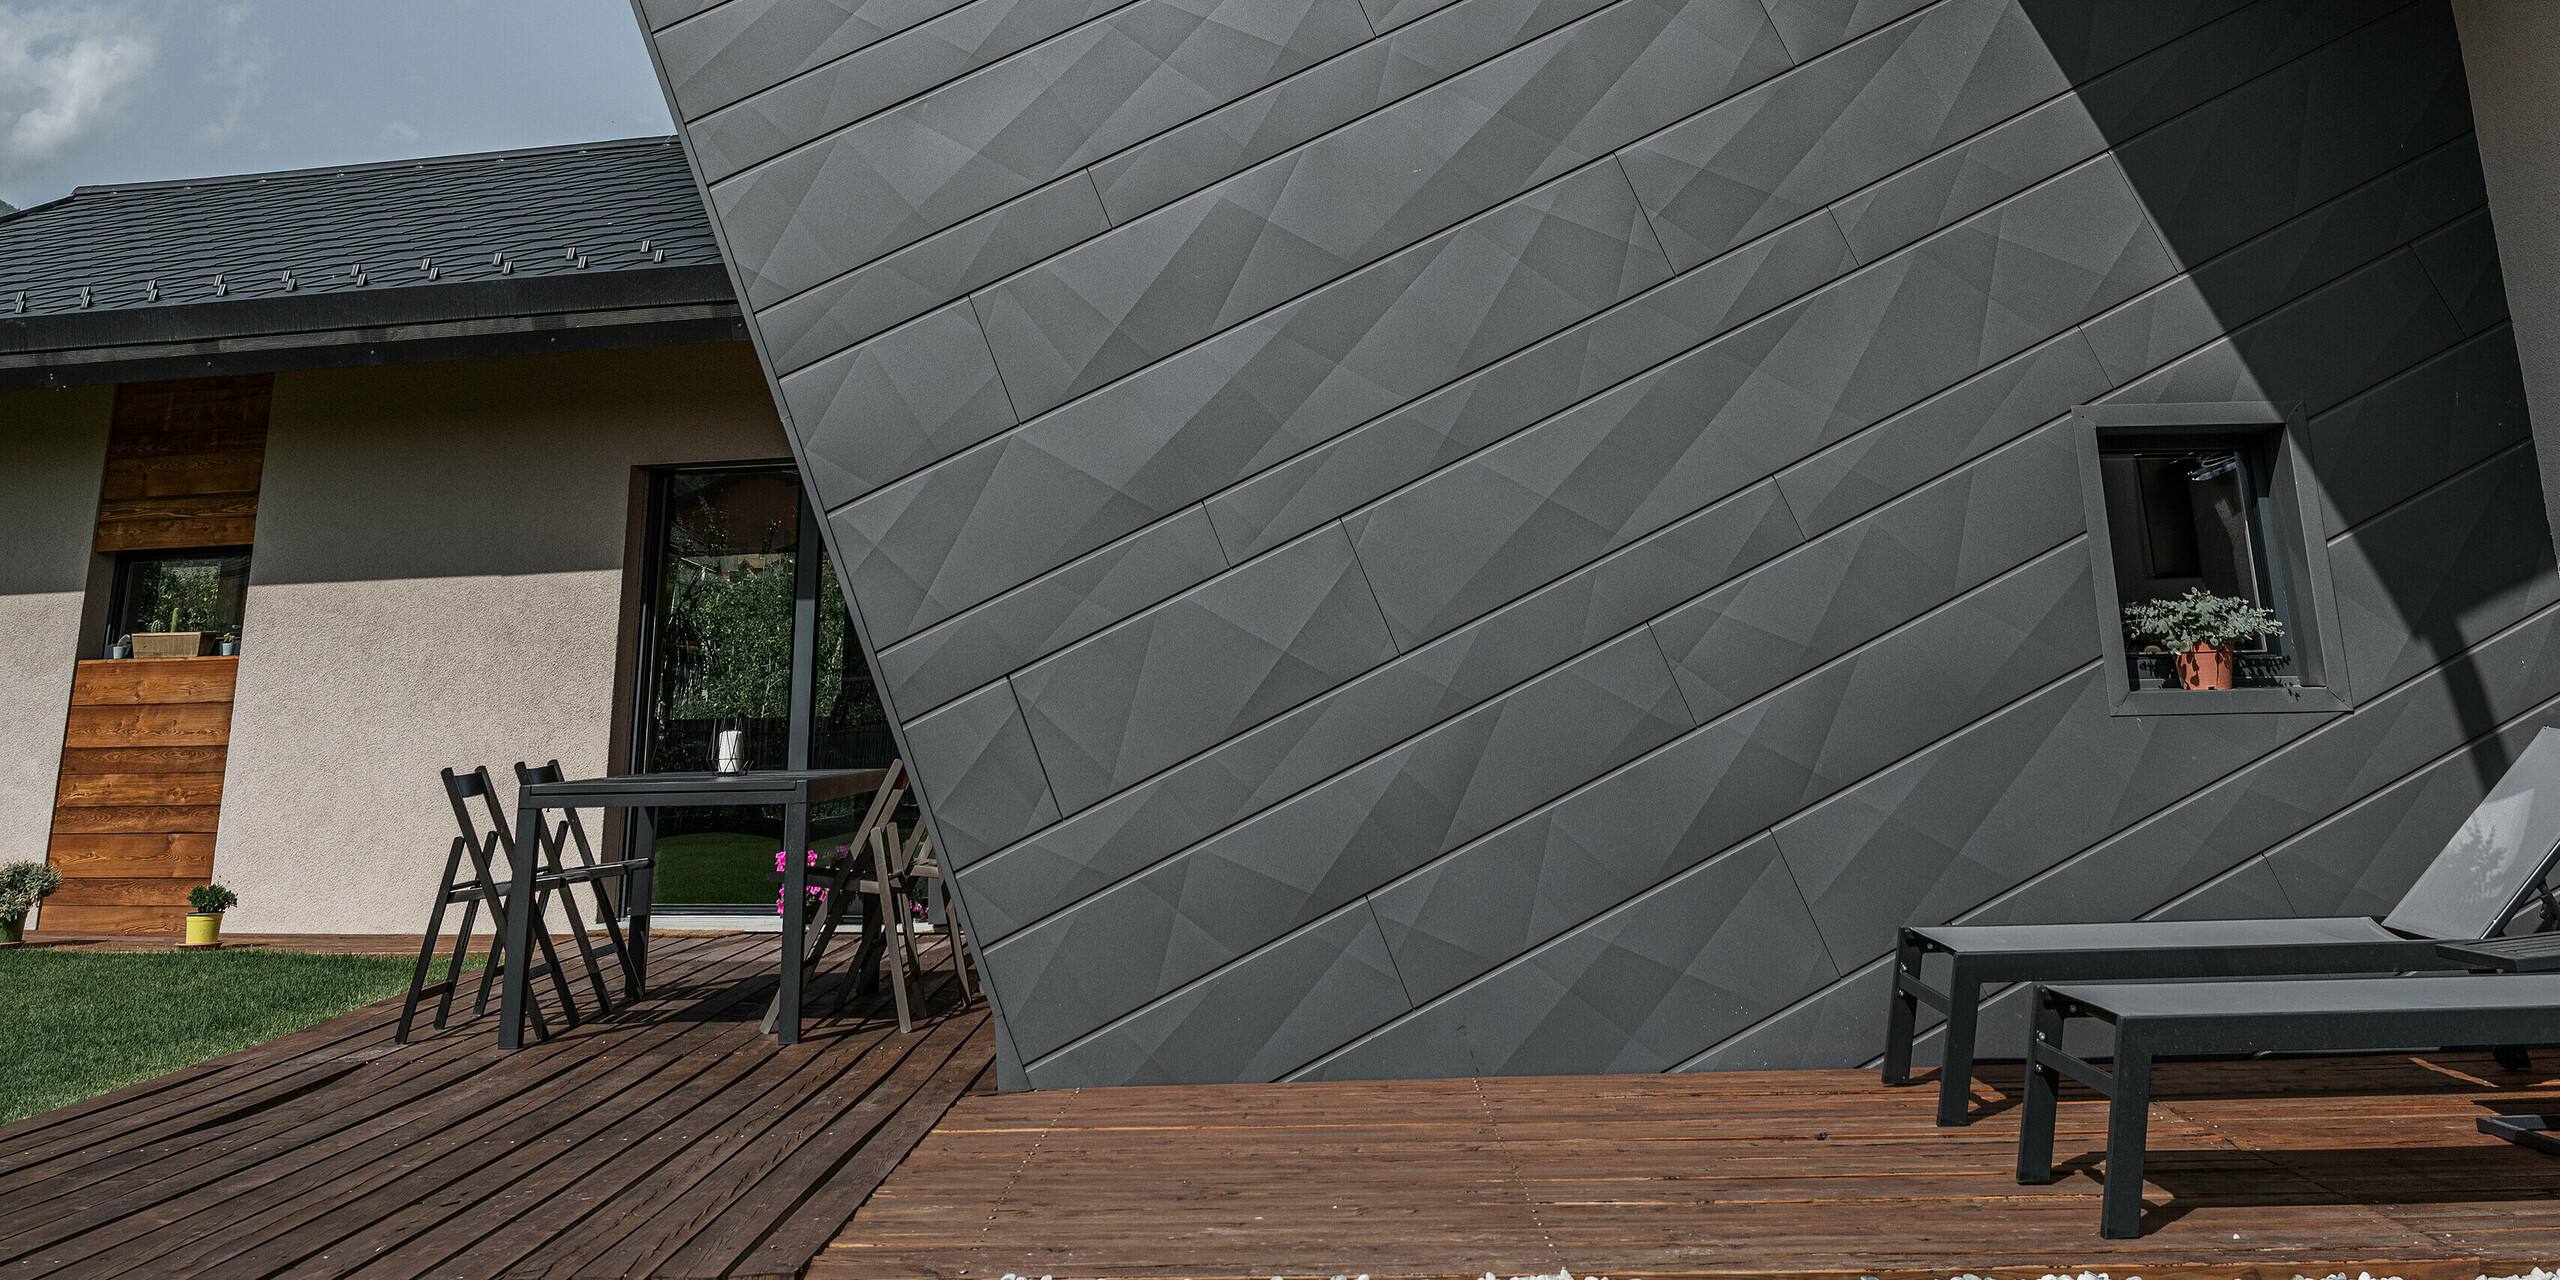 Pohľad na vilu Tia v Gressane, Taliansko, s kompletným systémom PREFA. Budova sa vyznačuje fasádou s diagonálne uloženými panelmi Siding.X v tmavošedej farbe P.10. Kombinácia tmavého hliníka a teplých drevených prvkov konštrukcie terasy znamená moderný dizajn a udržateľné stavebné materiály.